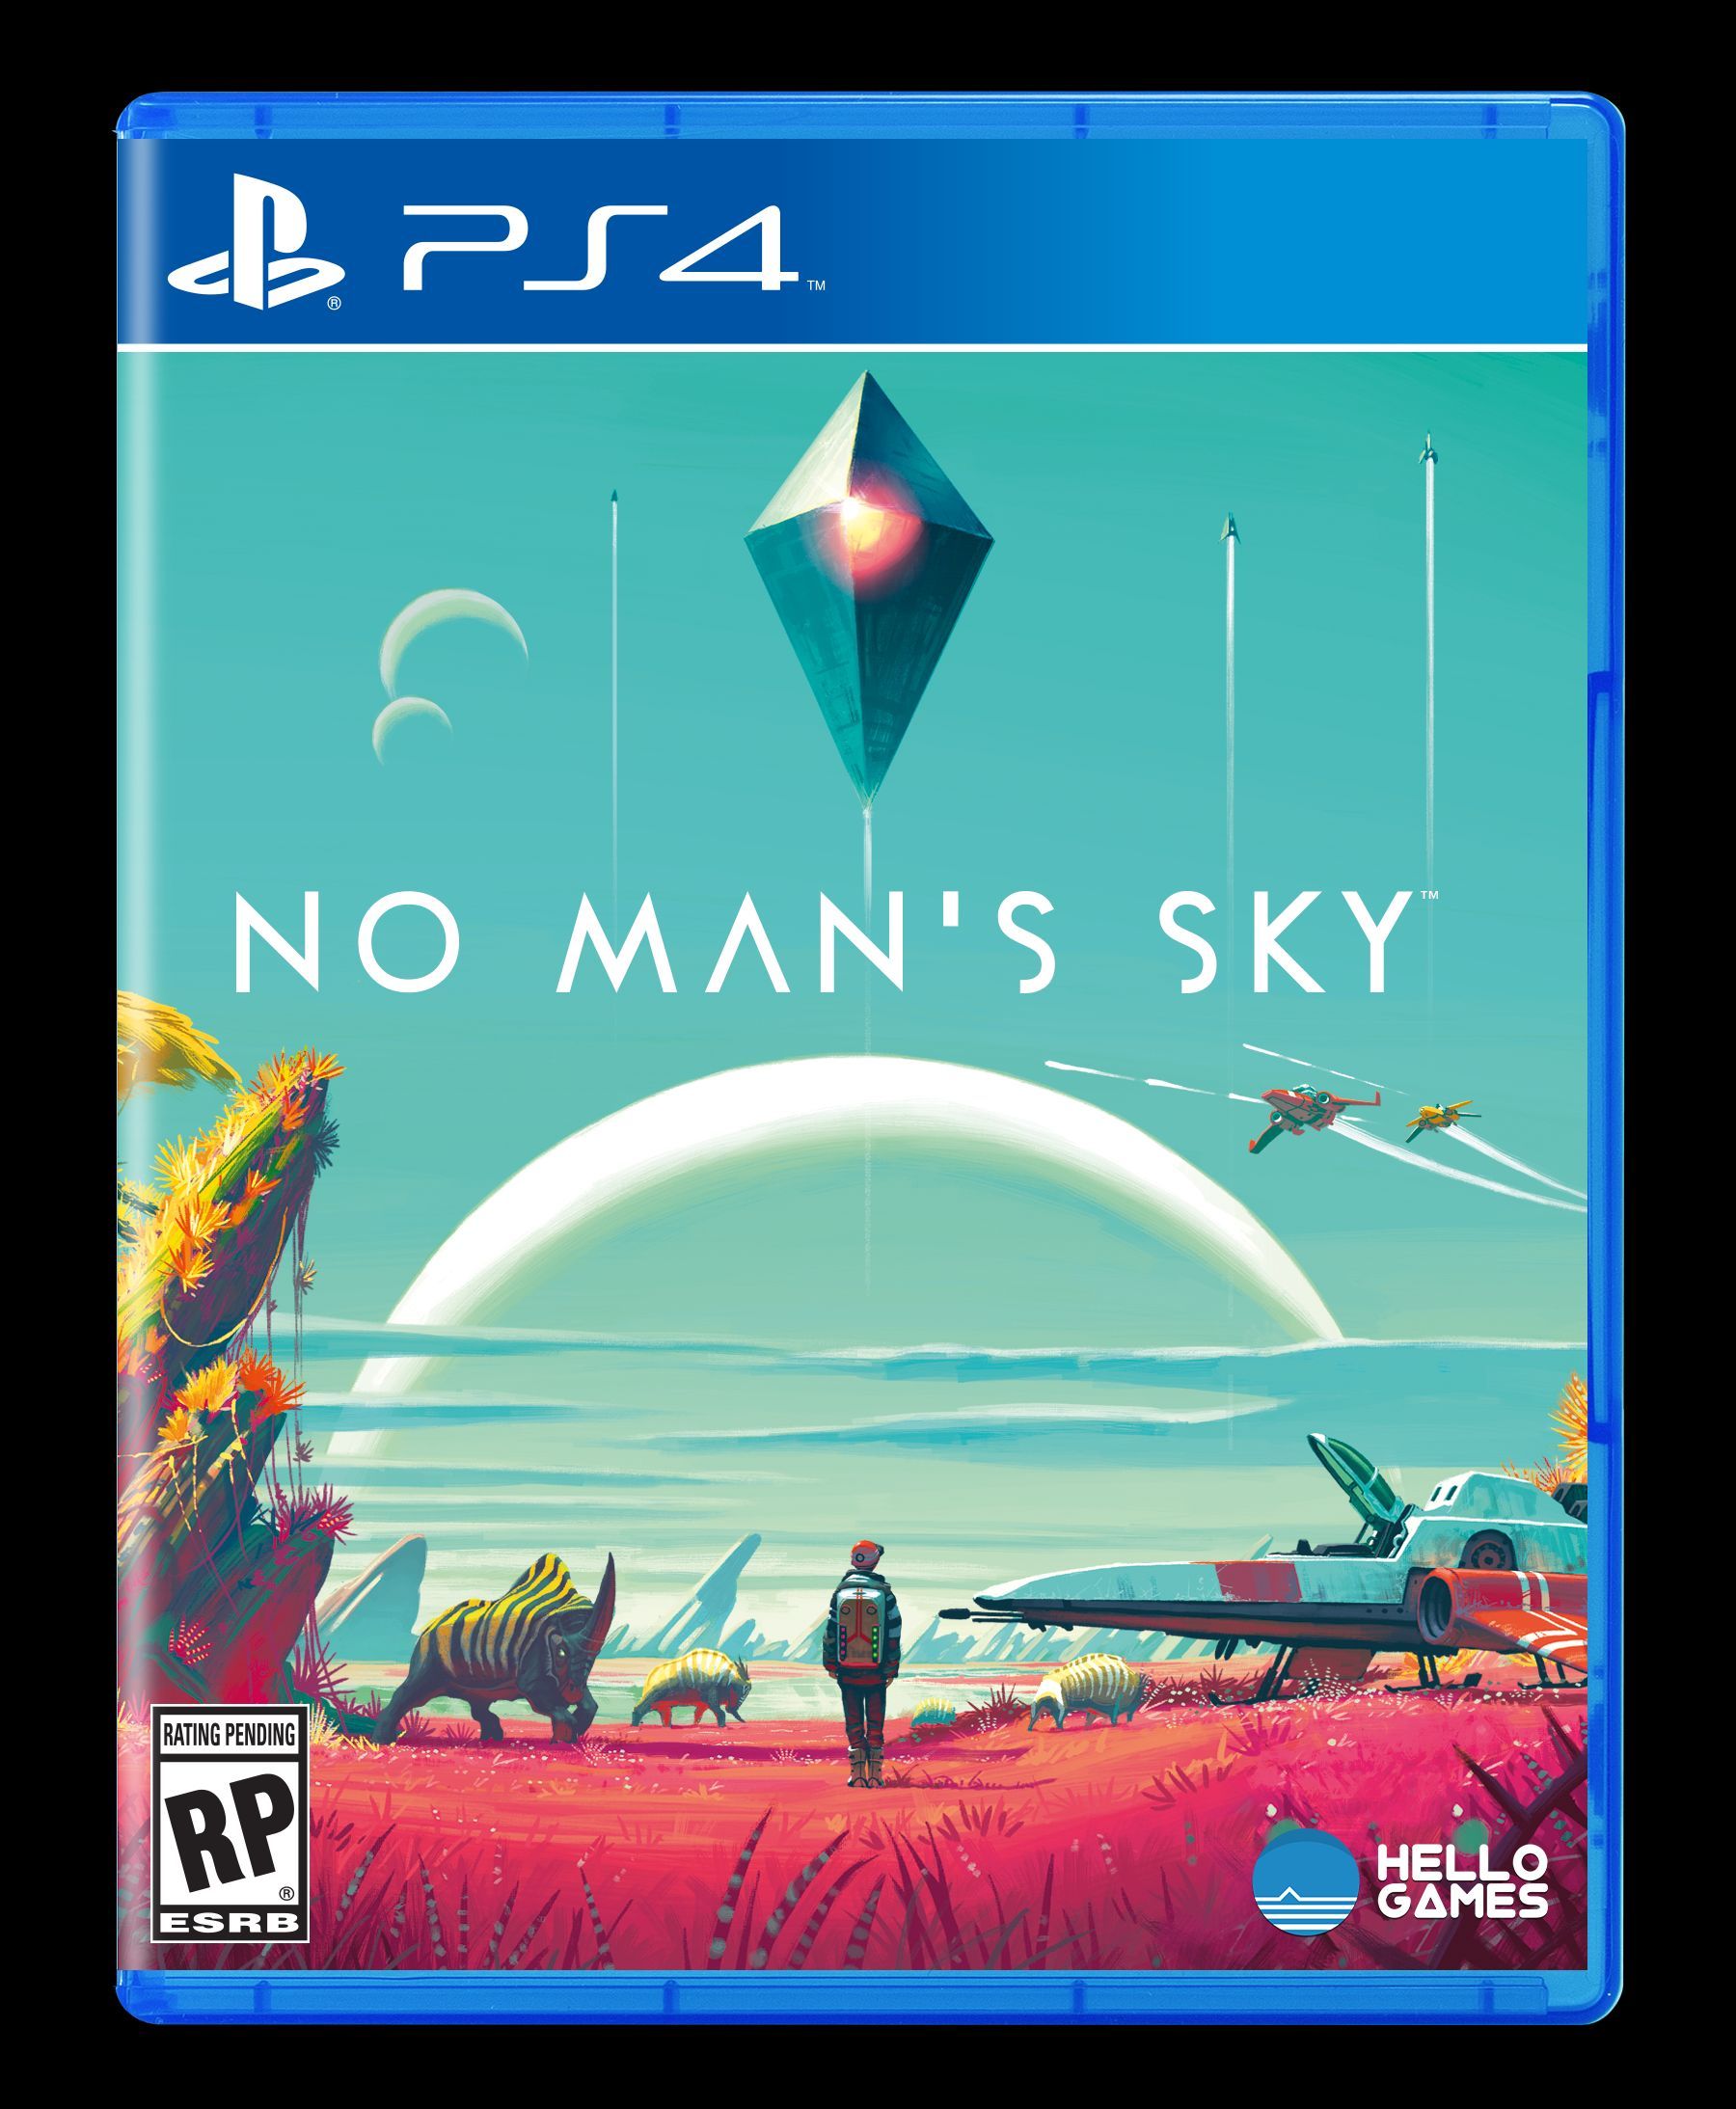 No Man's Sky PS4 Box Cover Art